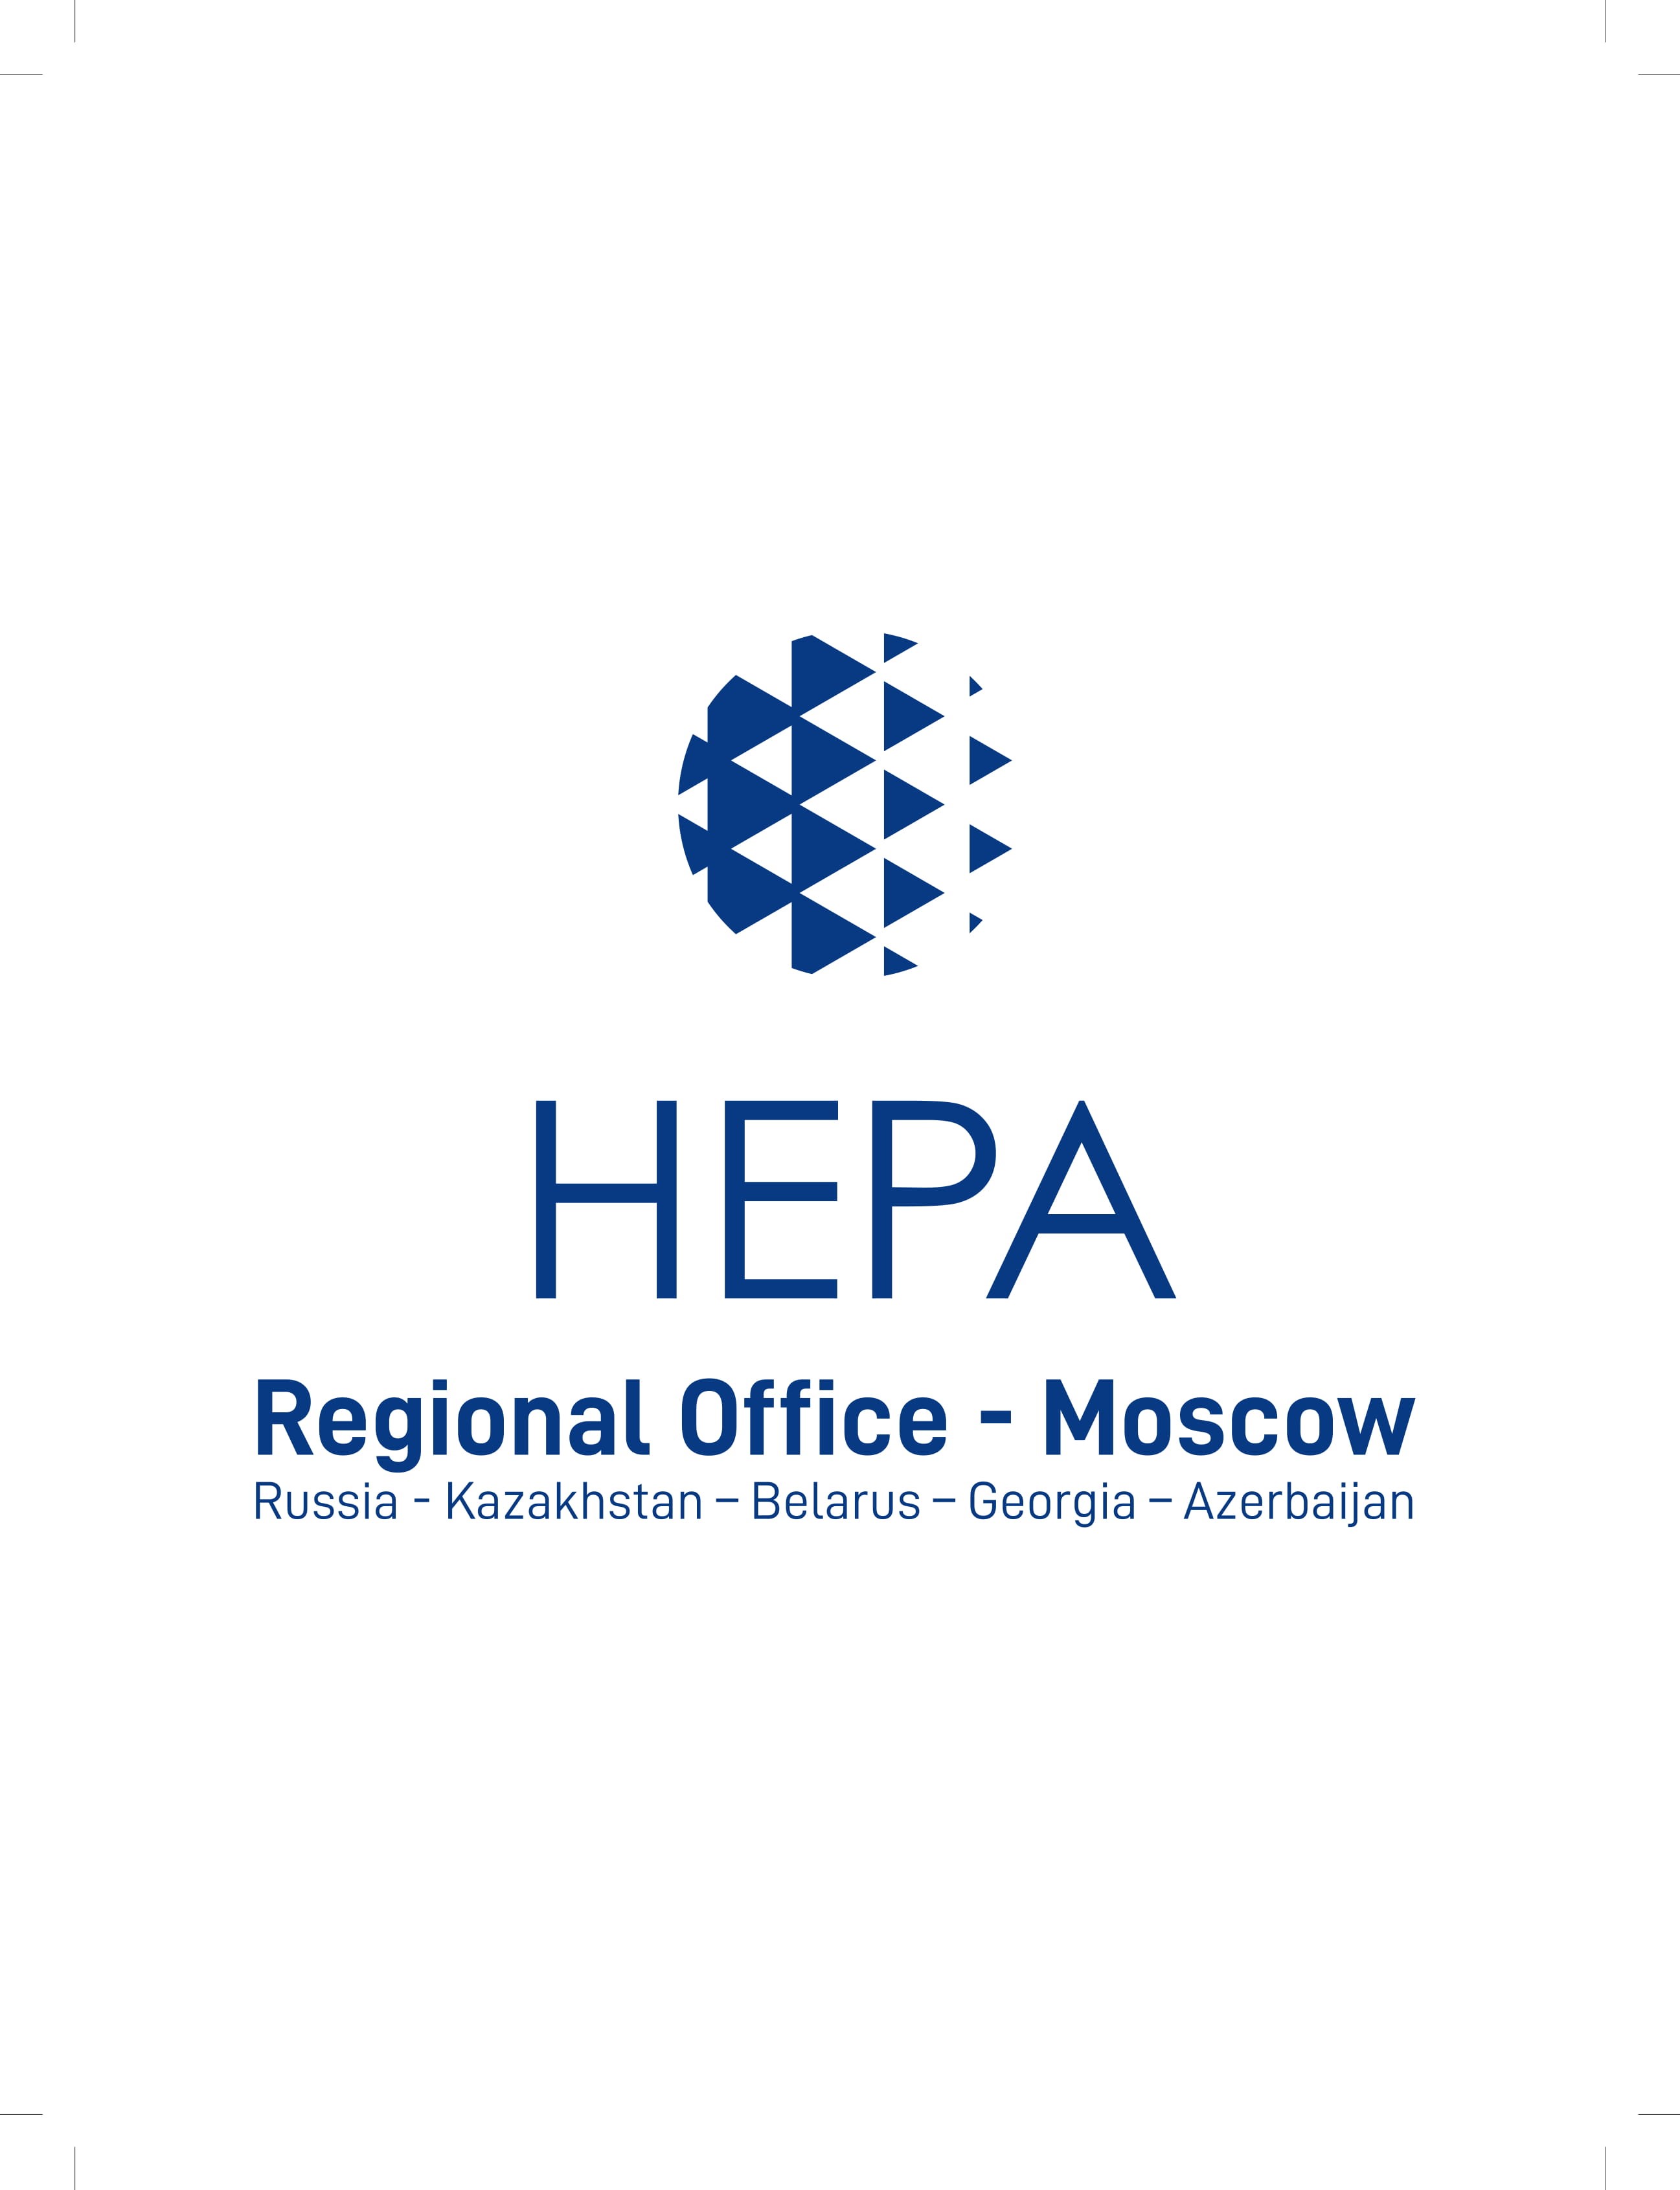 фото: Новое сотрудничество – новые горизонты: Московский офис HEPA стал партнером международного медицинского маркетплейса Medzona